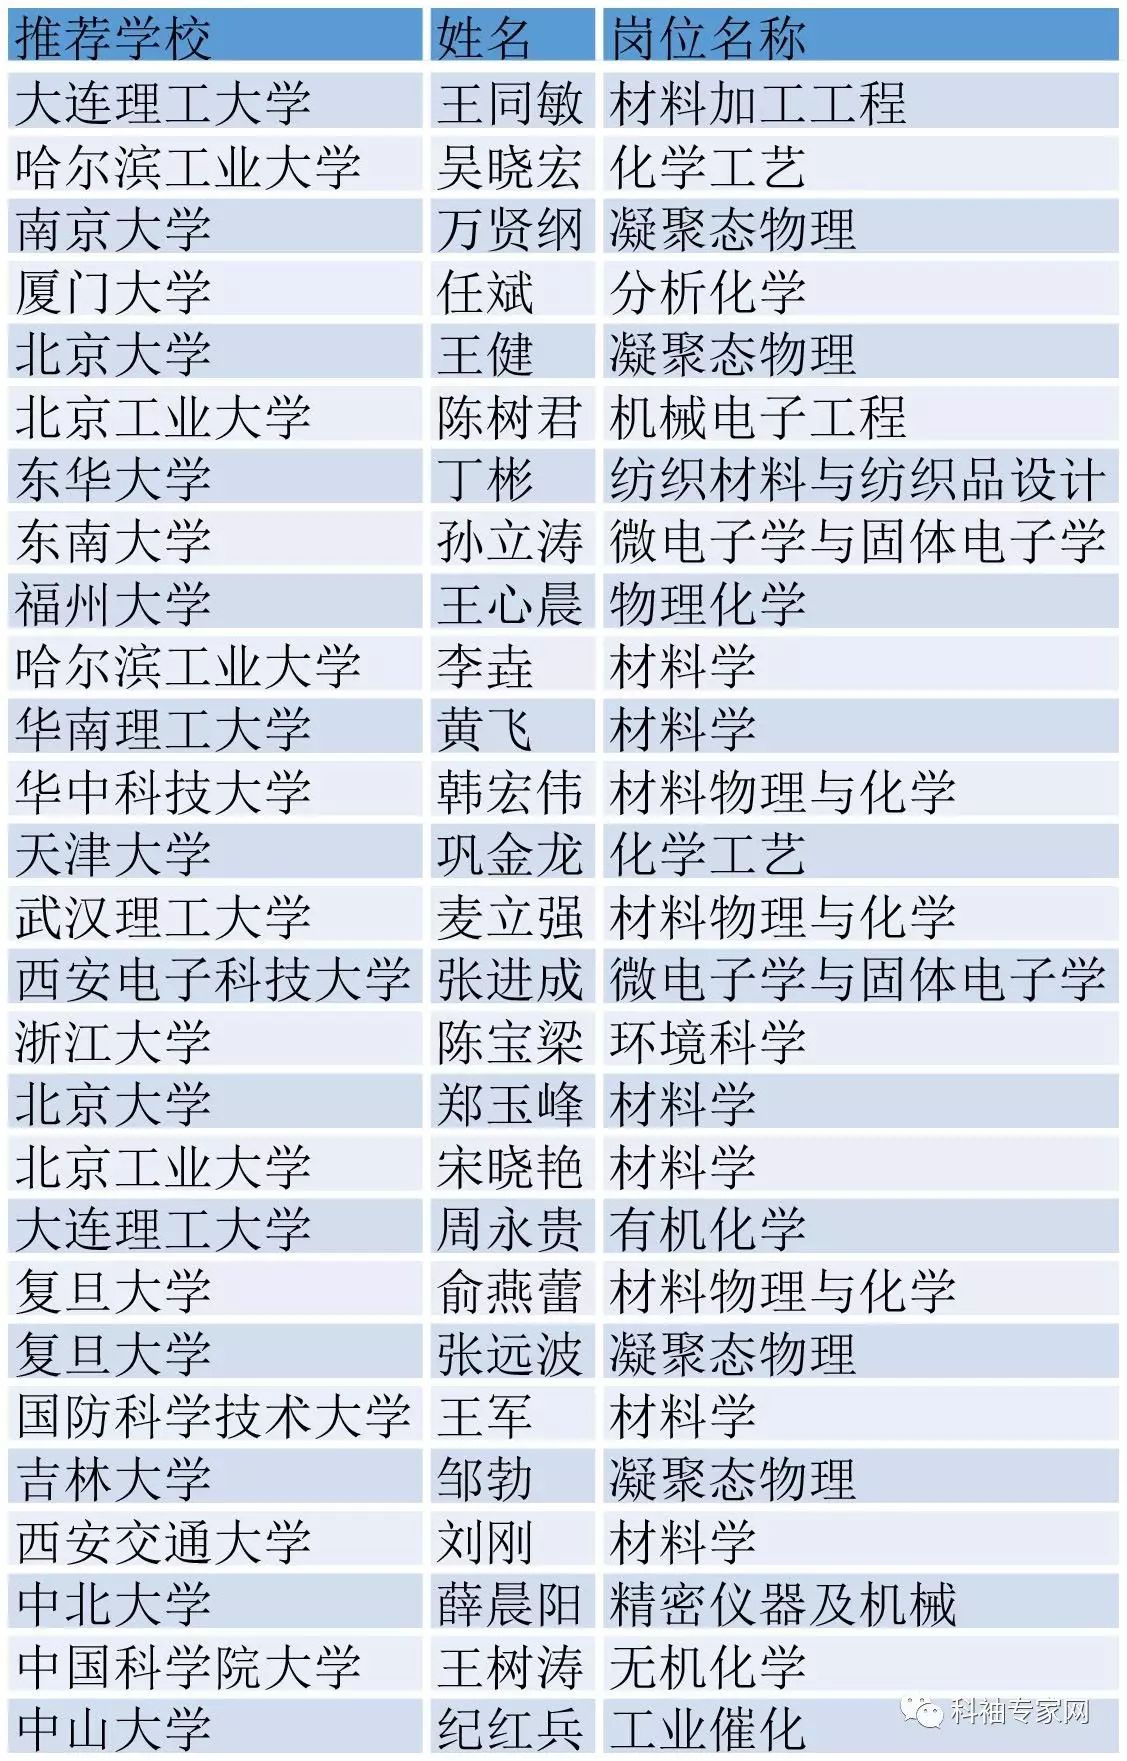 教育部公布2016年度“长江学者奖励计划”入选名单，看材料人表现如何？